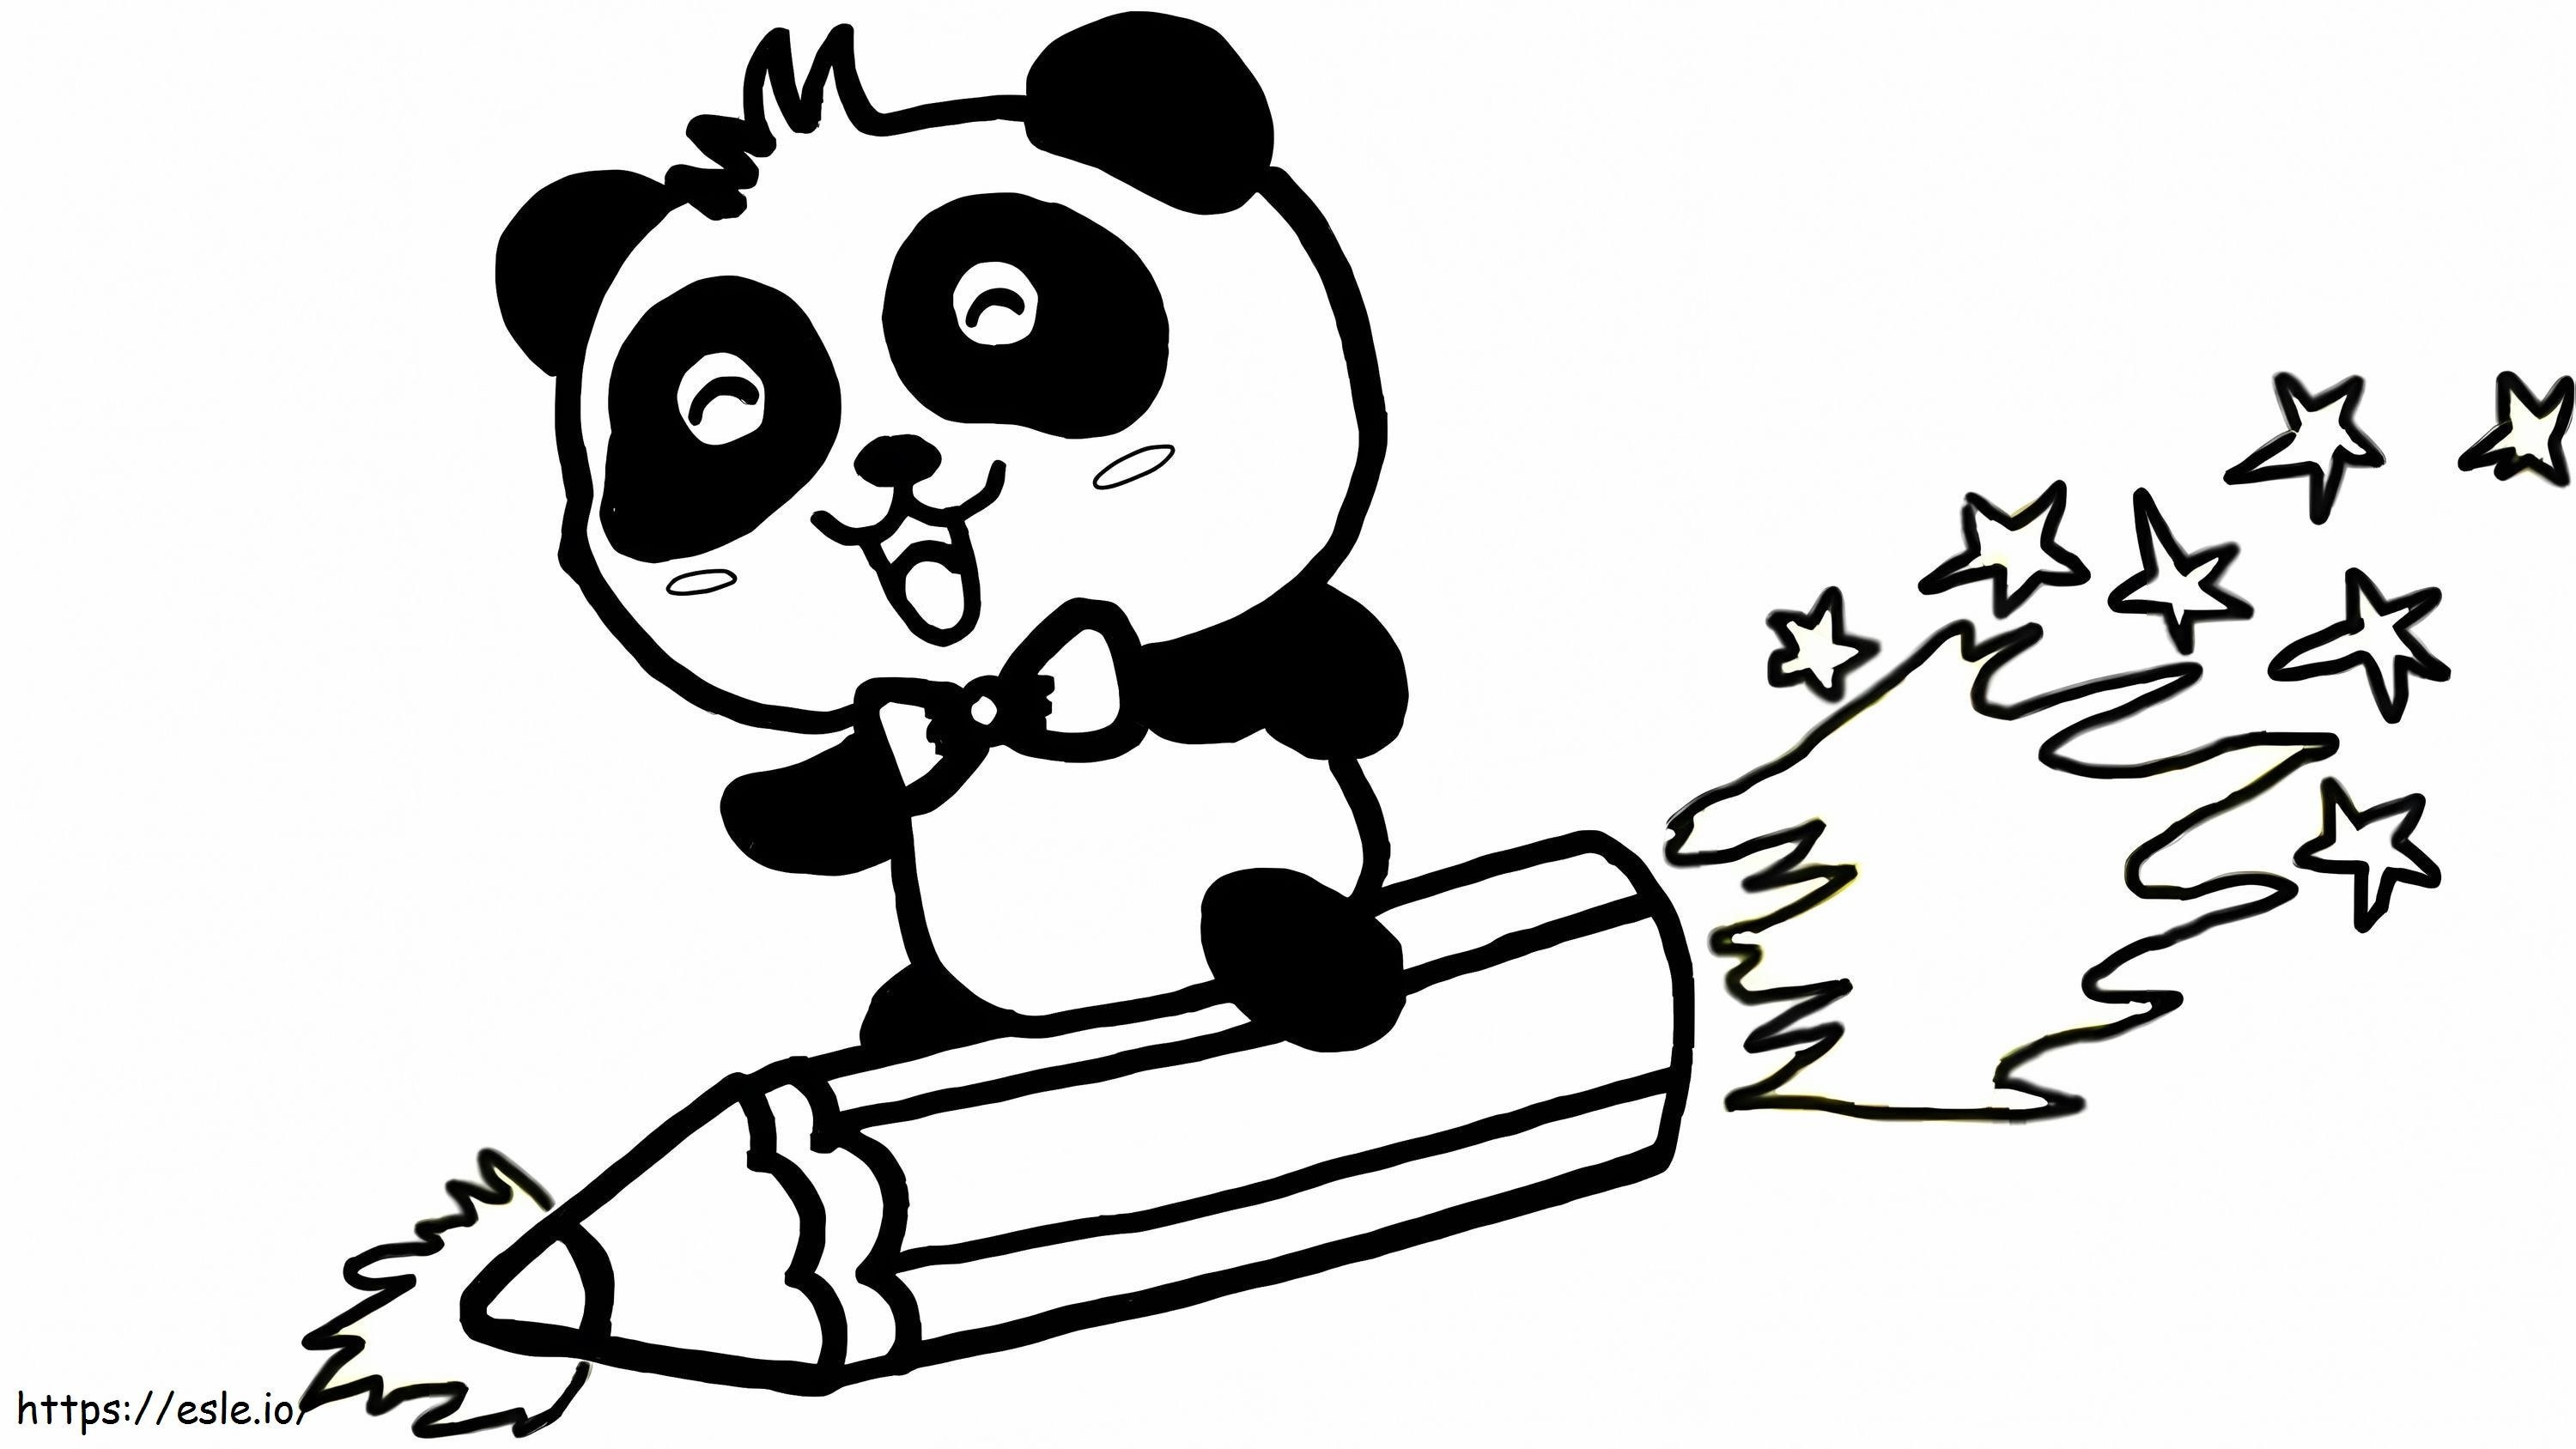 Kalem Roketli Panda boyama